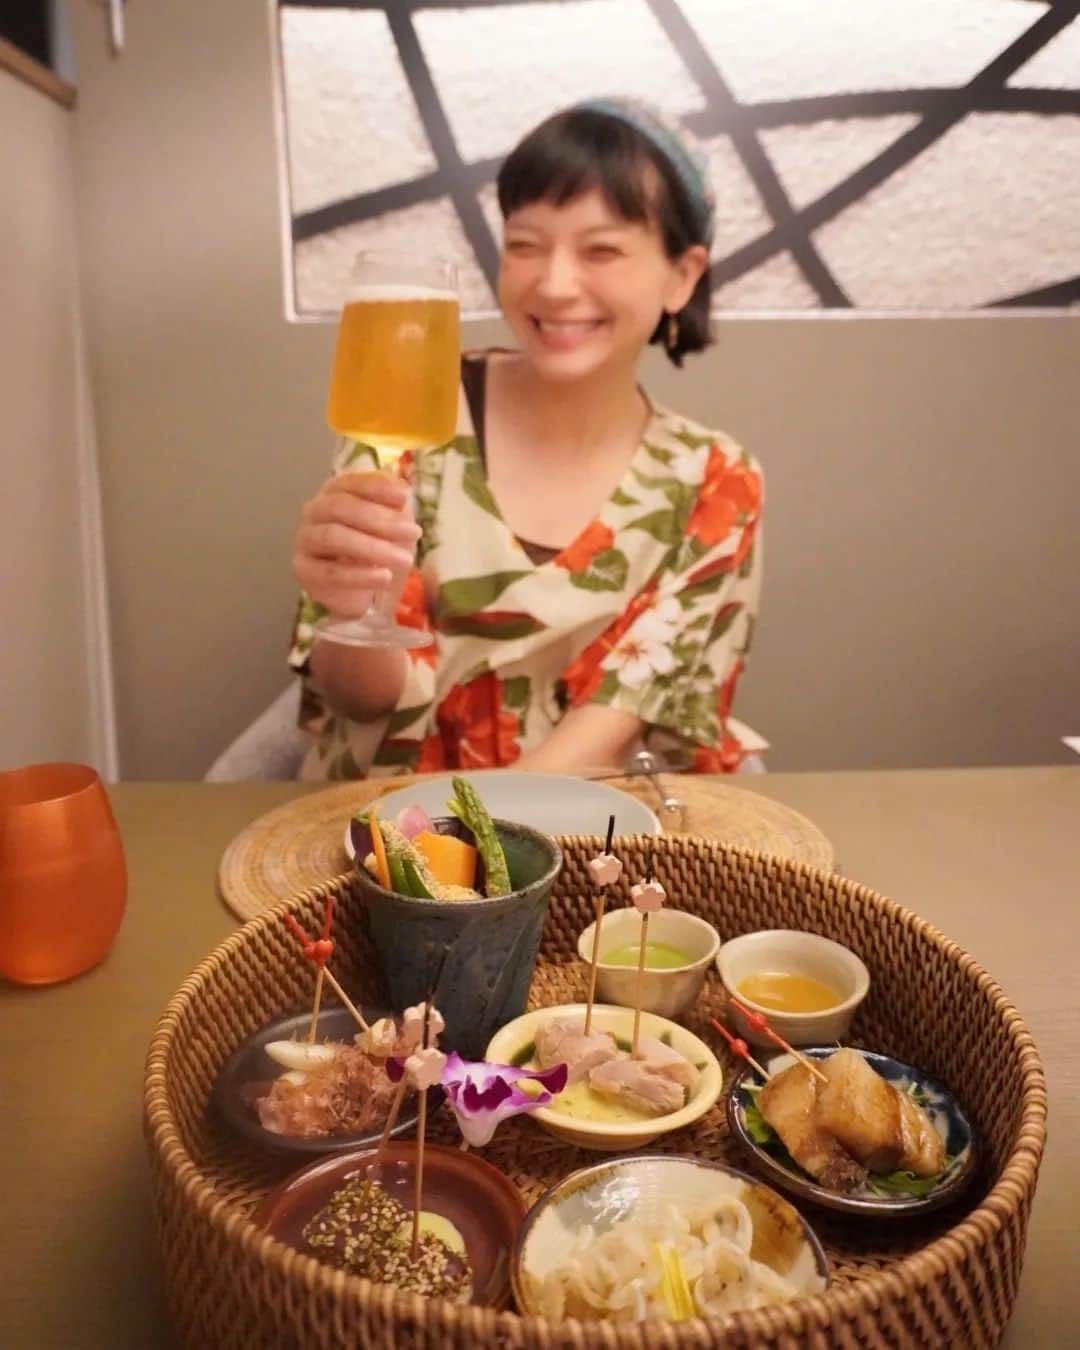 芳美リンのインスタグラム：「🗾読谷/沖縄　Yomitan/Okinawa  グランディスタイル沖縄読谷ホテル＆リゾート🌊  ホカンスで重要なのは、 ご飯の美味しさ♡♡  夕飯は、メインの鍋料理にプラス、 様々なおばんざい。 沖縄らしい食材の食事を色々と堪能しました。  朝食はメインを4種類から選べて、 サラダやスープのミニビュッフェつき。  どれもこれも美味しくて、、(*´ڡ`●)  そして、このホテルは、無料のレンタル品がかなり充実していて、 子ども用のおもちゃ、絵本、ベビーベッドやお世話道具、大人の美容アイテム、リゾートウェアまで貸してくれます👀  ホテルを出なくてもなんでも揃うってすごい！  #グランディスタイル沖縄読谷ホテル＆リゾート #GLAMOROUSDAY @glamday_style_hotel_and_resort @socialport_jp #ホカンス #マタ旅#子連れ旅#トラベラルトドラー #結婚記念日#記念日旅行 #グランディスタイル沖縄読谷ホテル＆リゾート」